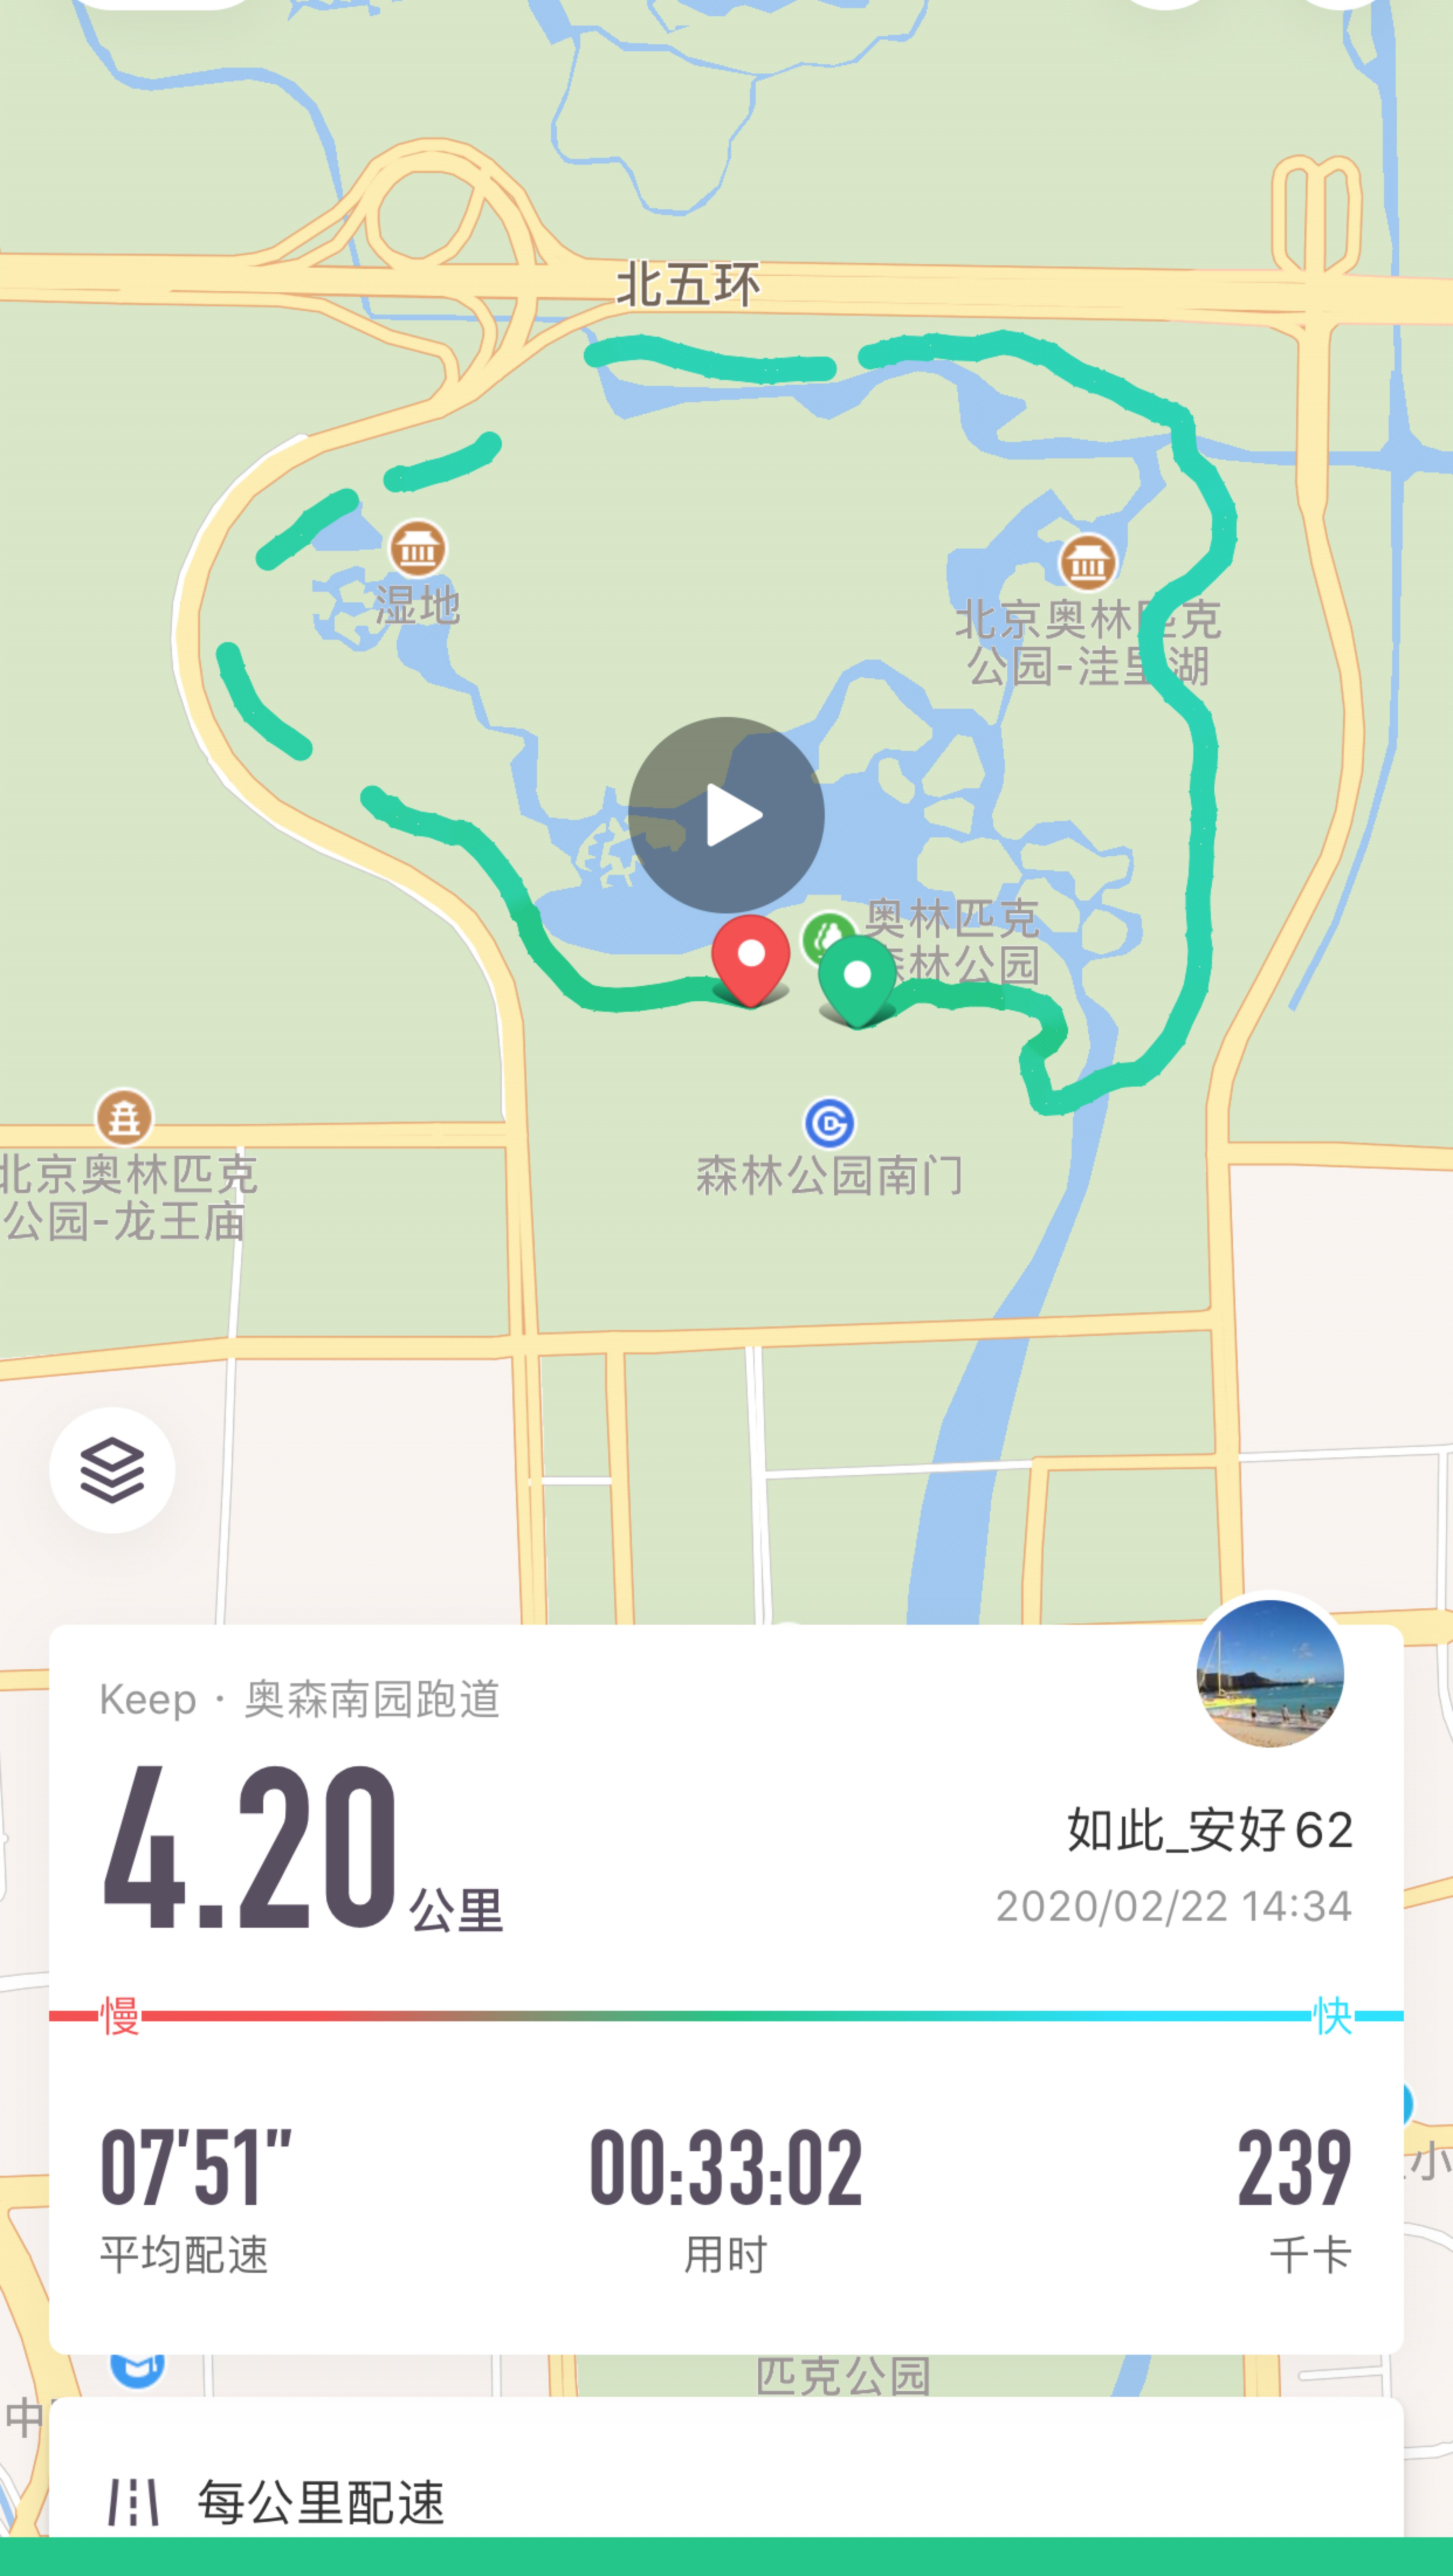 昨天第一天朝阳公园连续跑5公里 今天第二天奥森跑 加油加油努力 砥砺